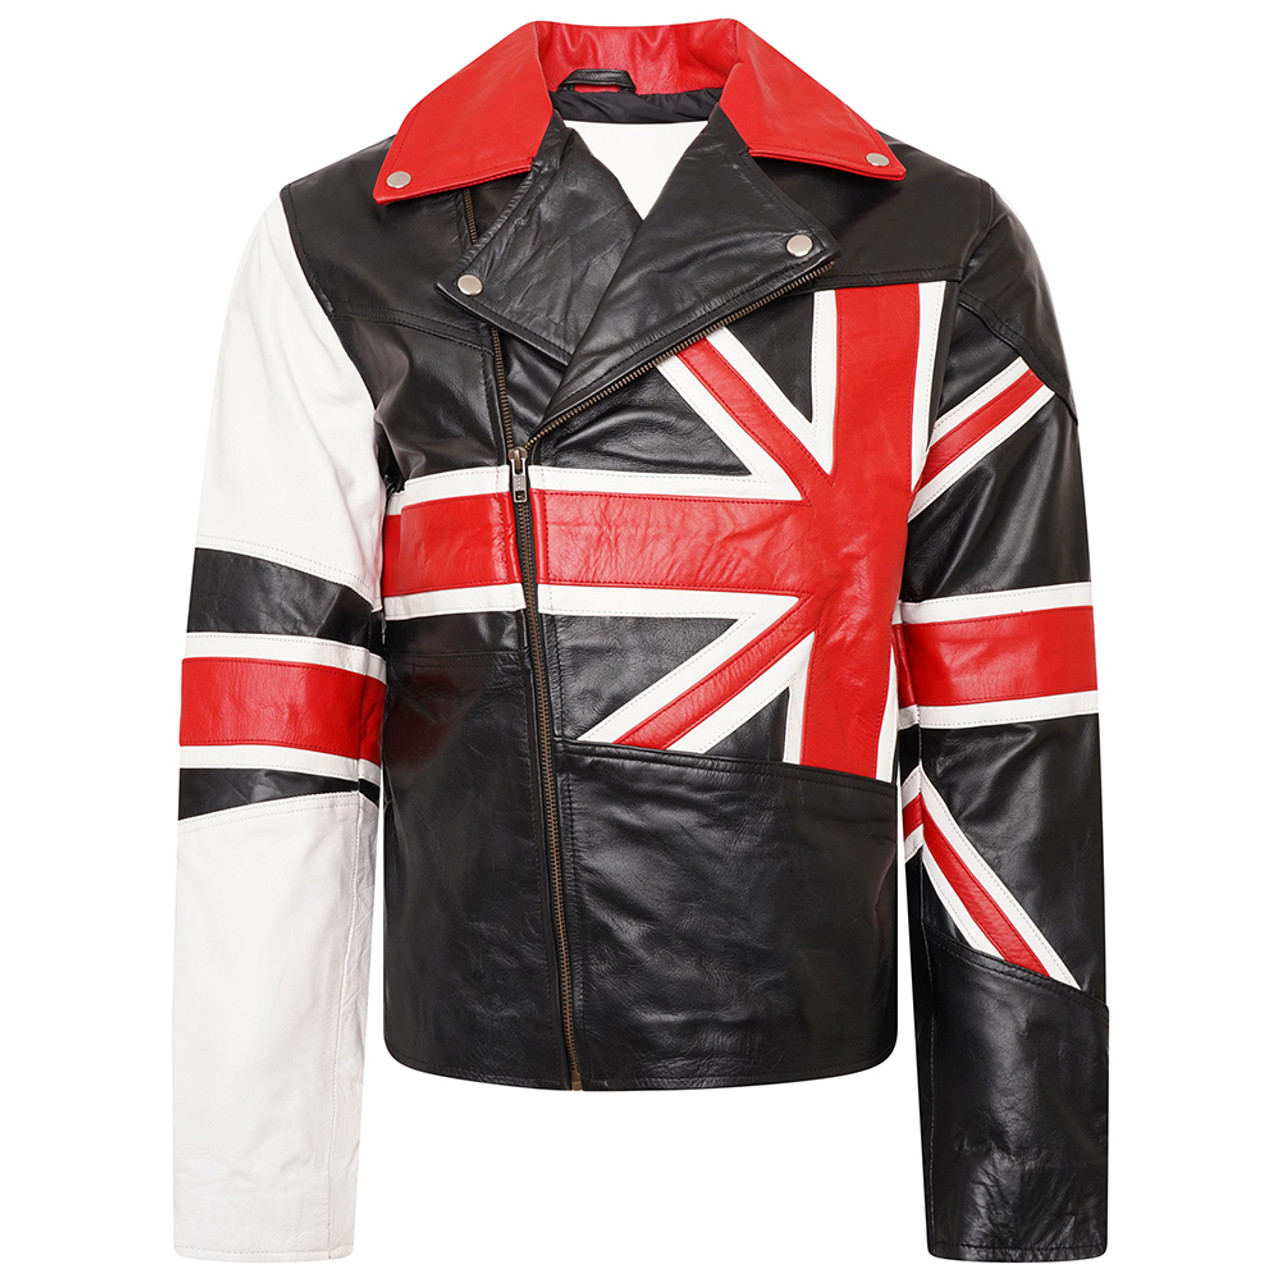 Jacket with british flag